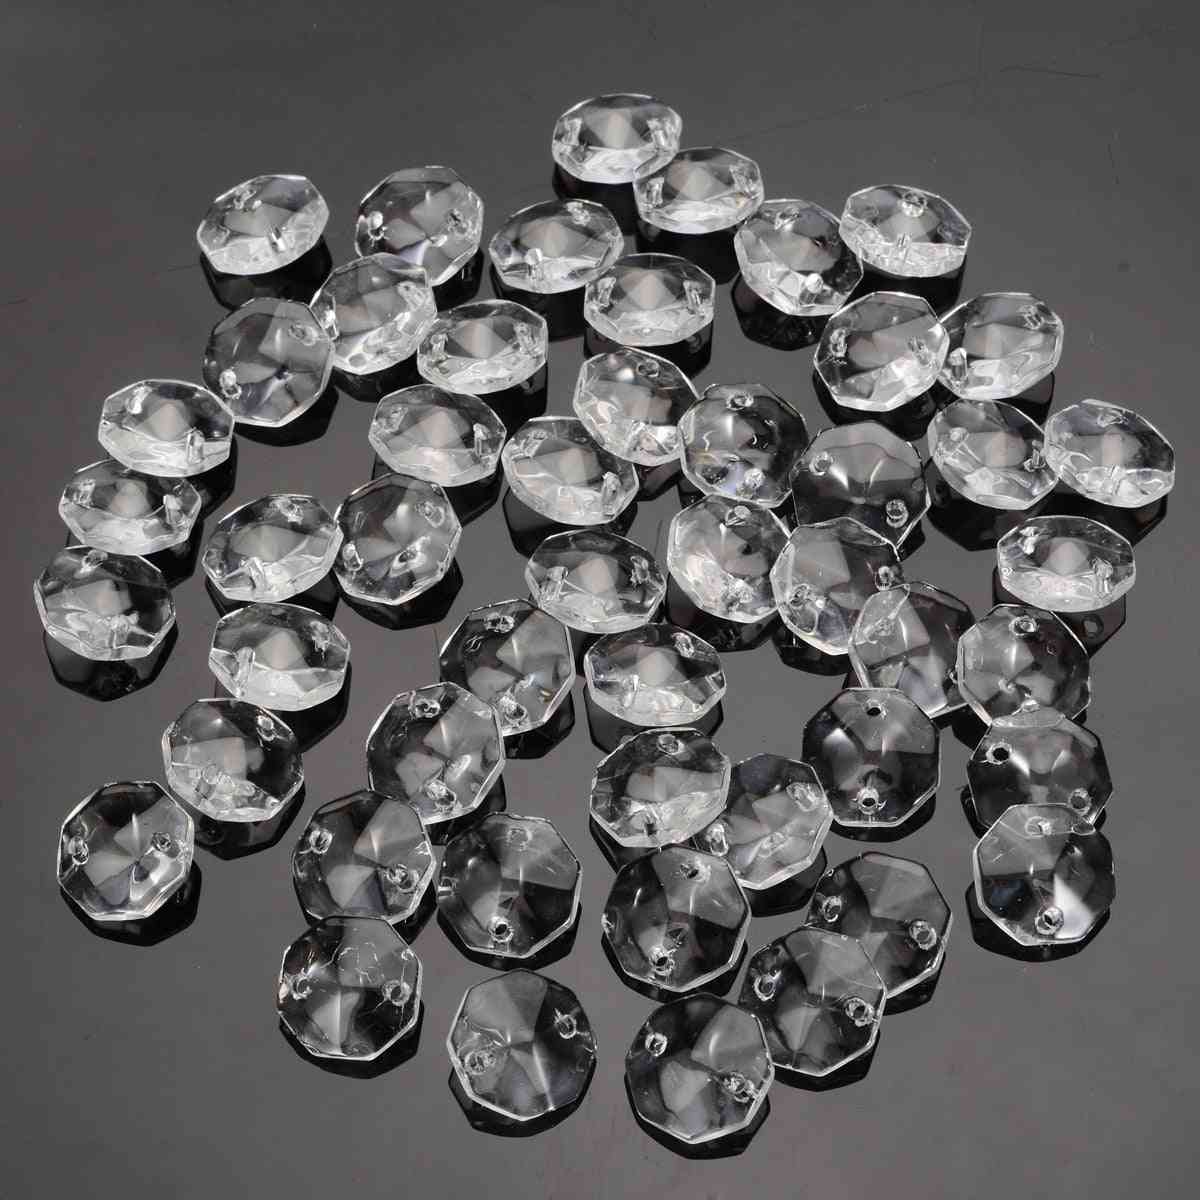 Prismas de cristal de cristal perlas octogonales transparentes candelabros colgantes para decoraciones de luz de lámpara